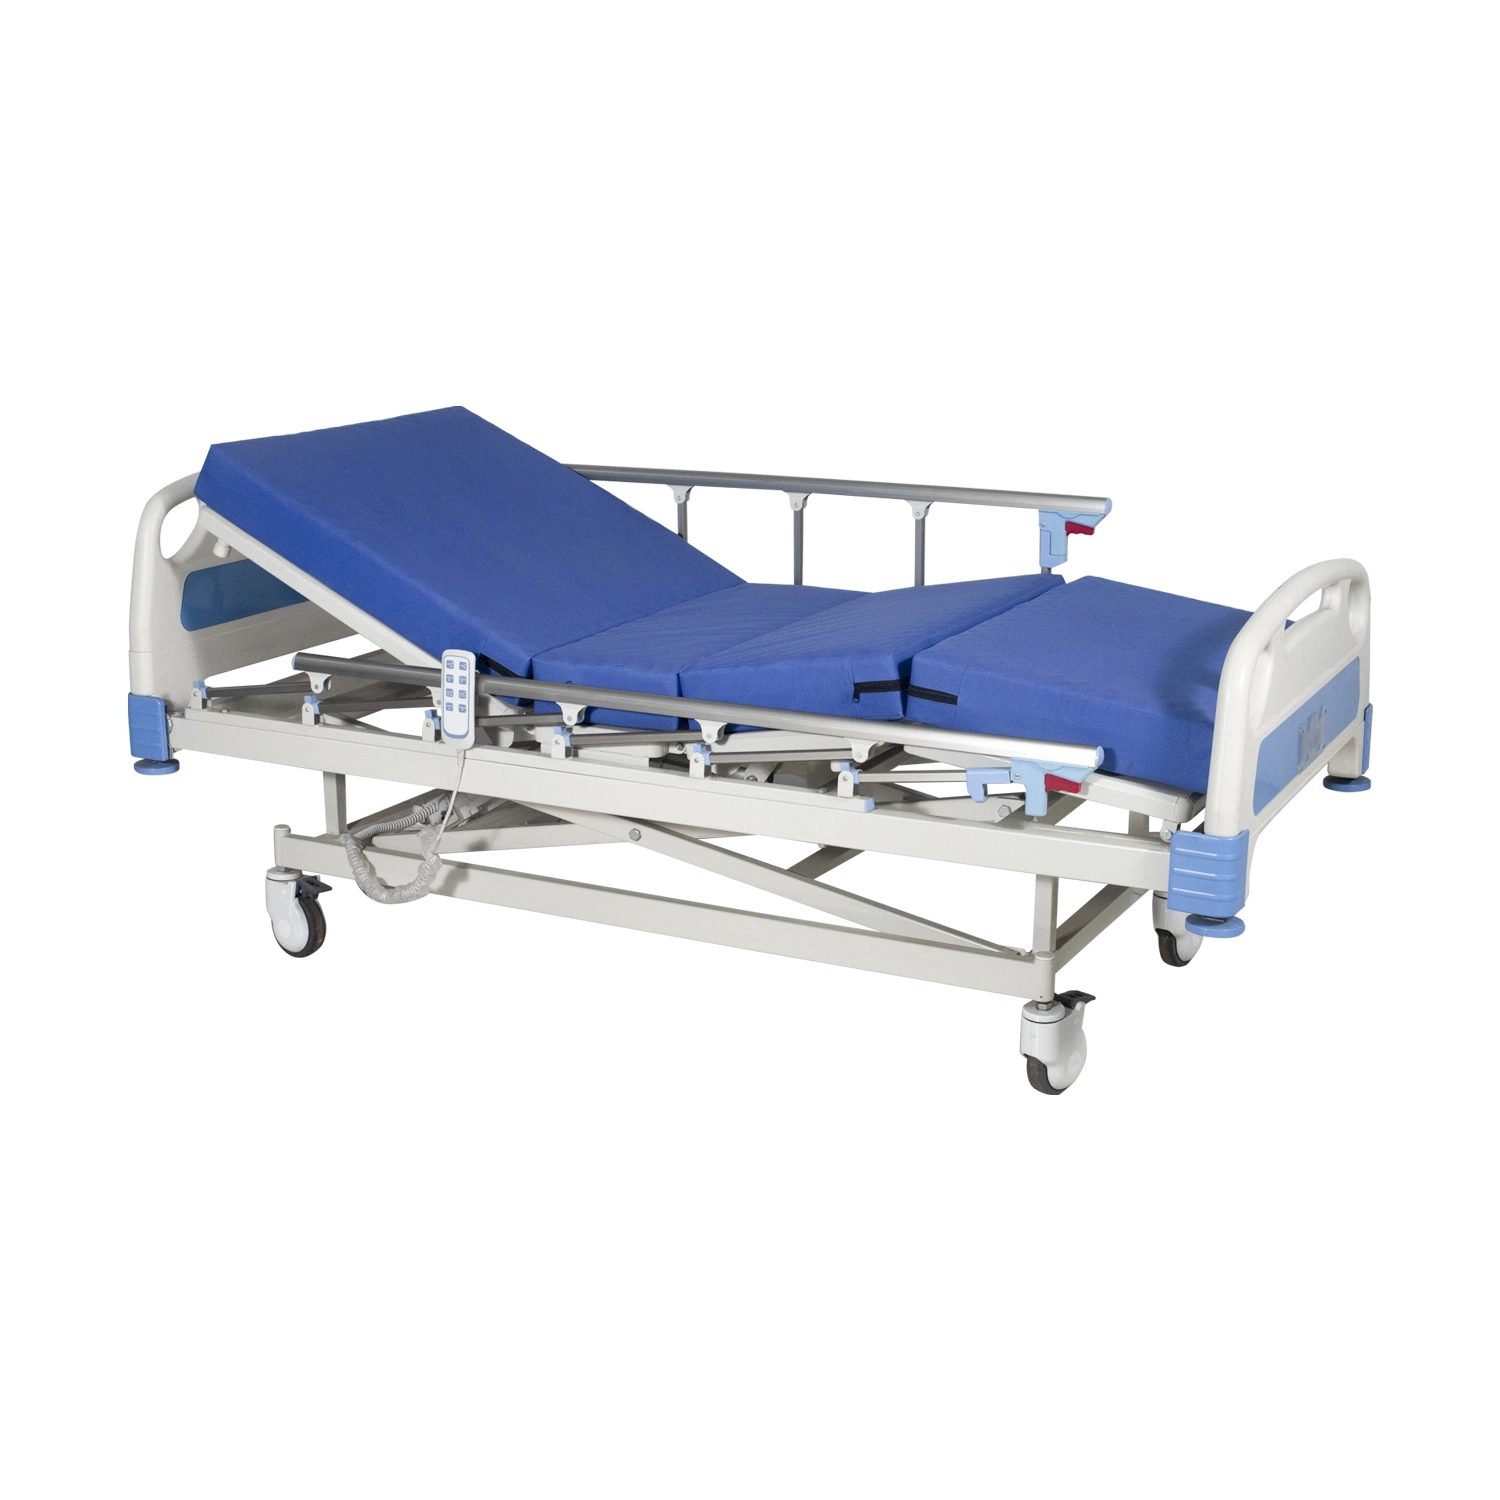 Rh-Ad306 3-Funktion Einstellbare Elektrische Steuerung Krankenhaus Bett: Patientenbehandlung Krankenpflege Bett